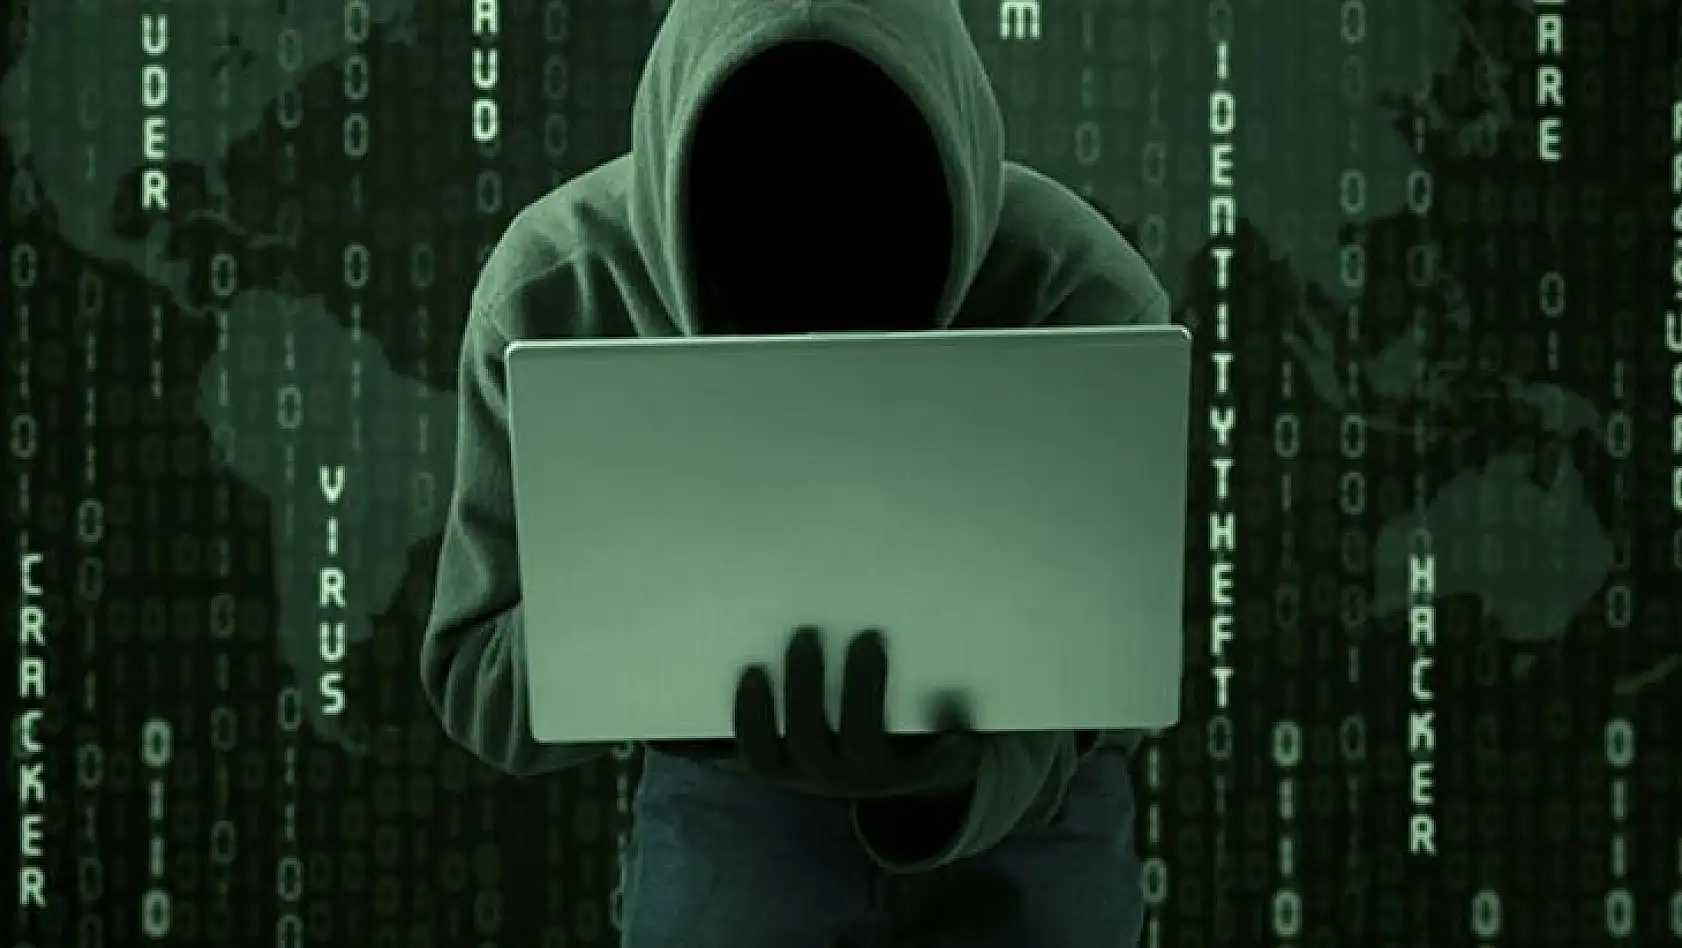 Siber jandarma sanal ortamdaki suçlulara nefes aldırmıyor: 123 şüpheliye yasal işlem yapıldı